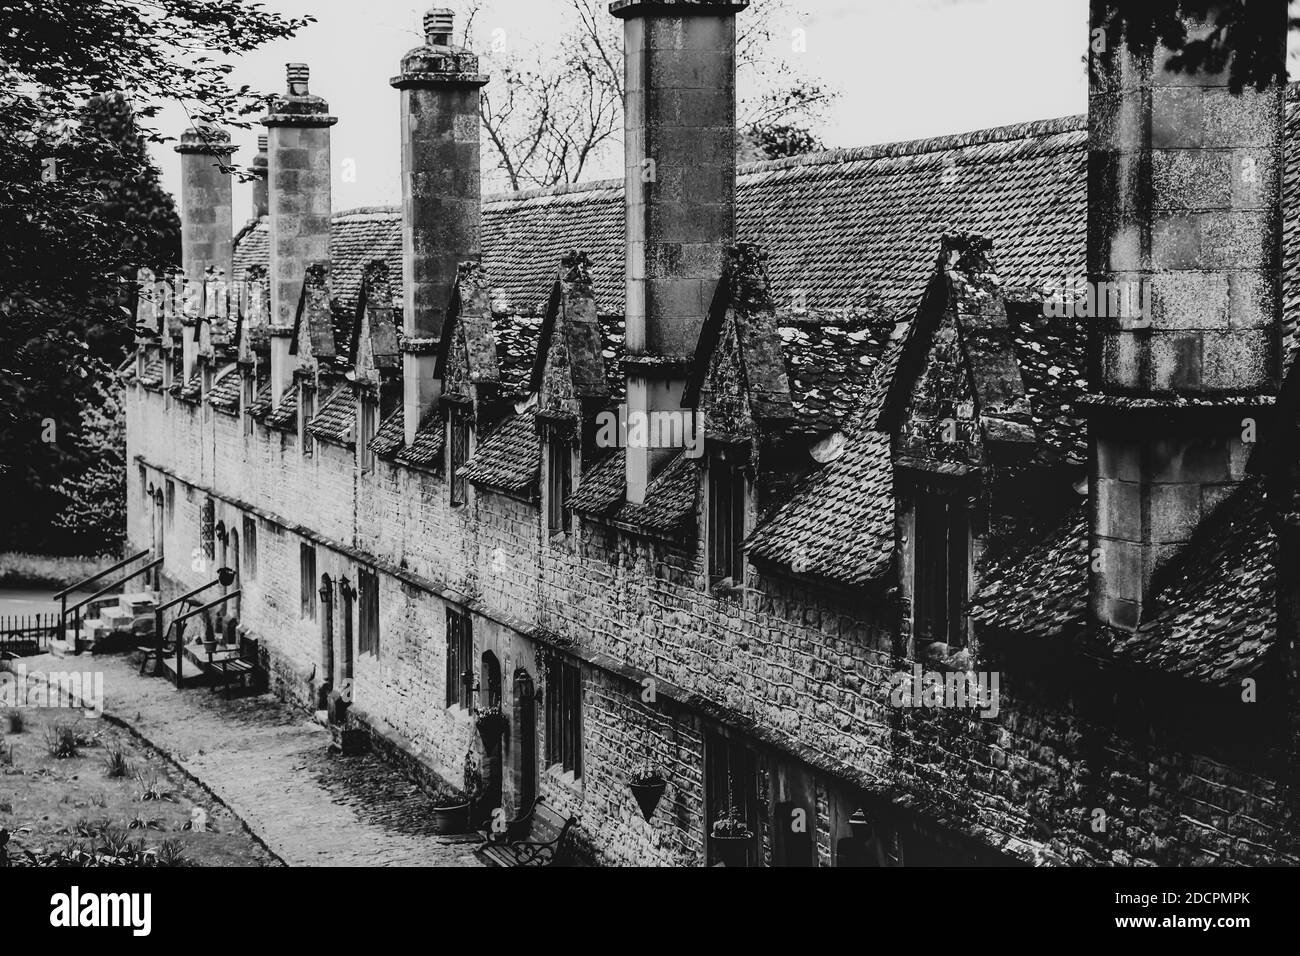 Un joyau architectural historique, les Almshoures Helyar, construits en pierre de Ham locale en 1640-60, dans le village de East Coker, Somerset, Angleterre, Royaume-Uni Banque D'Images